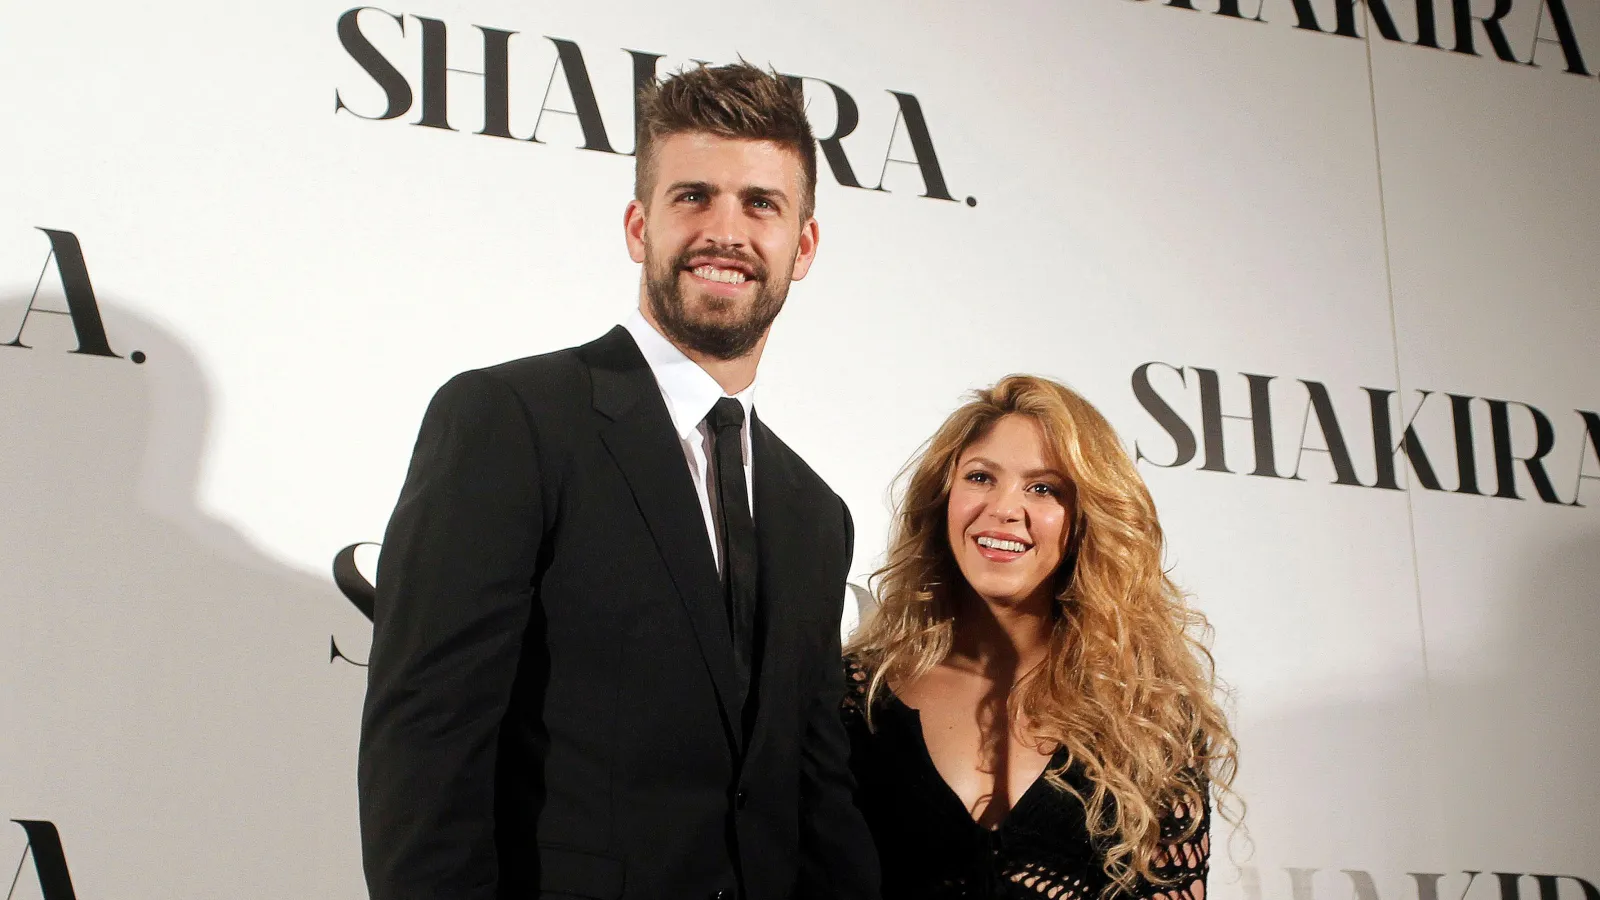 Gerard Piqué and Shakira